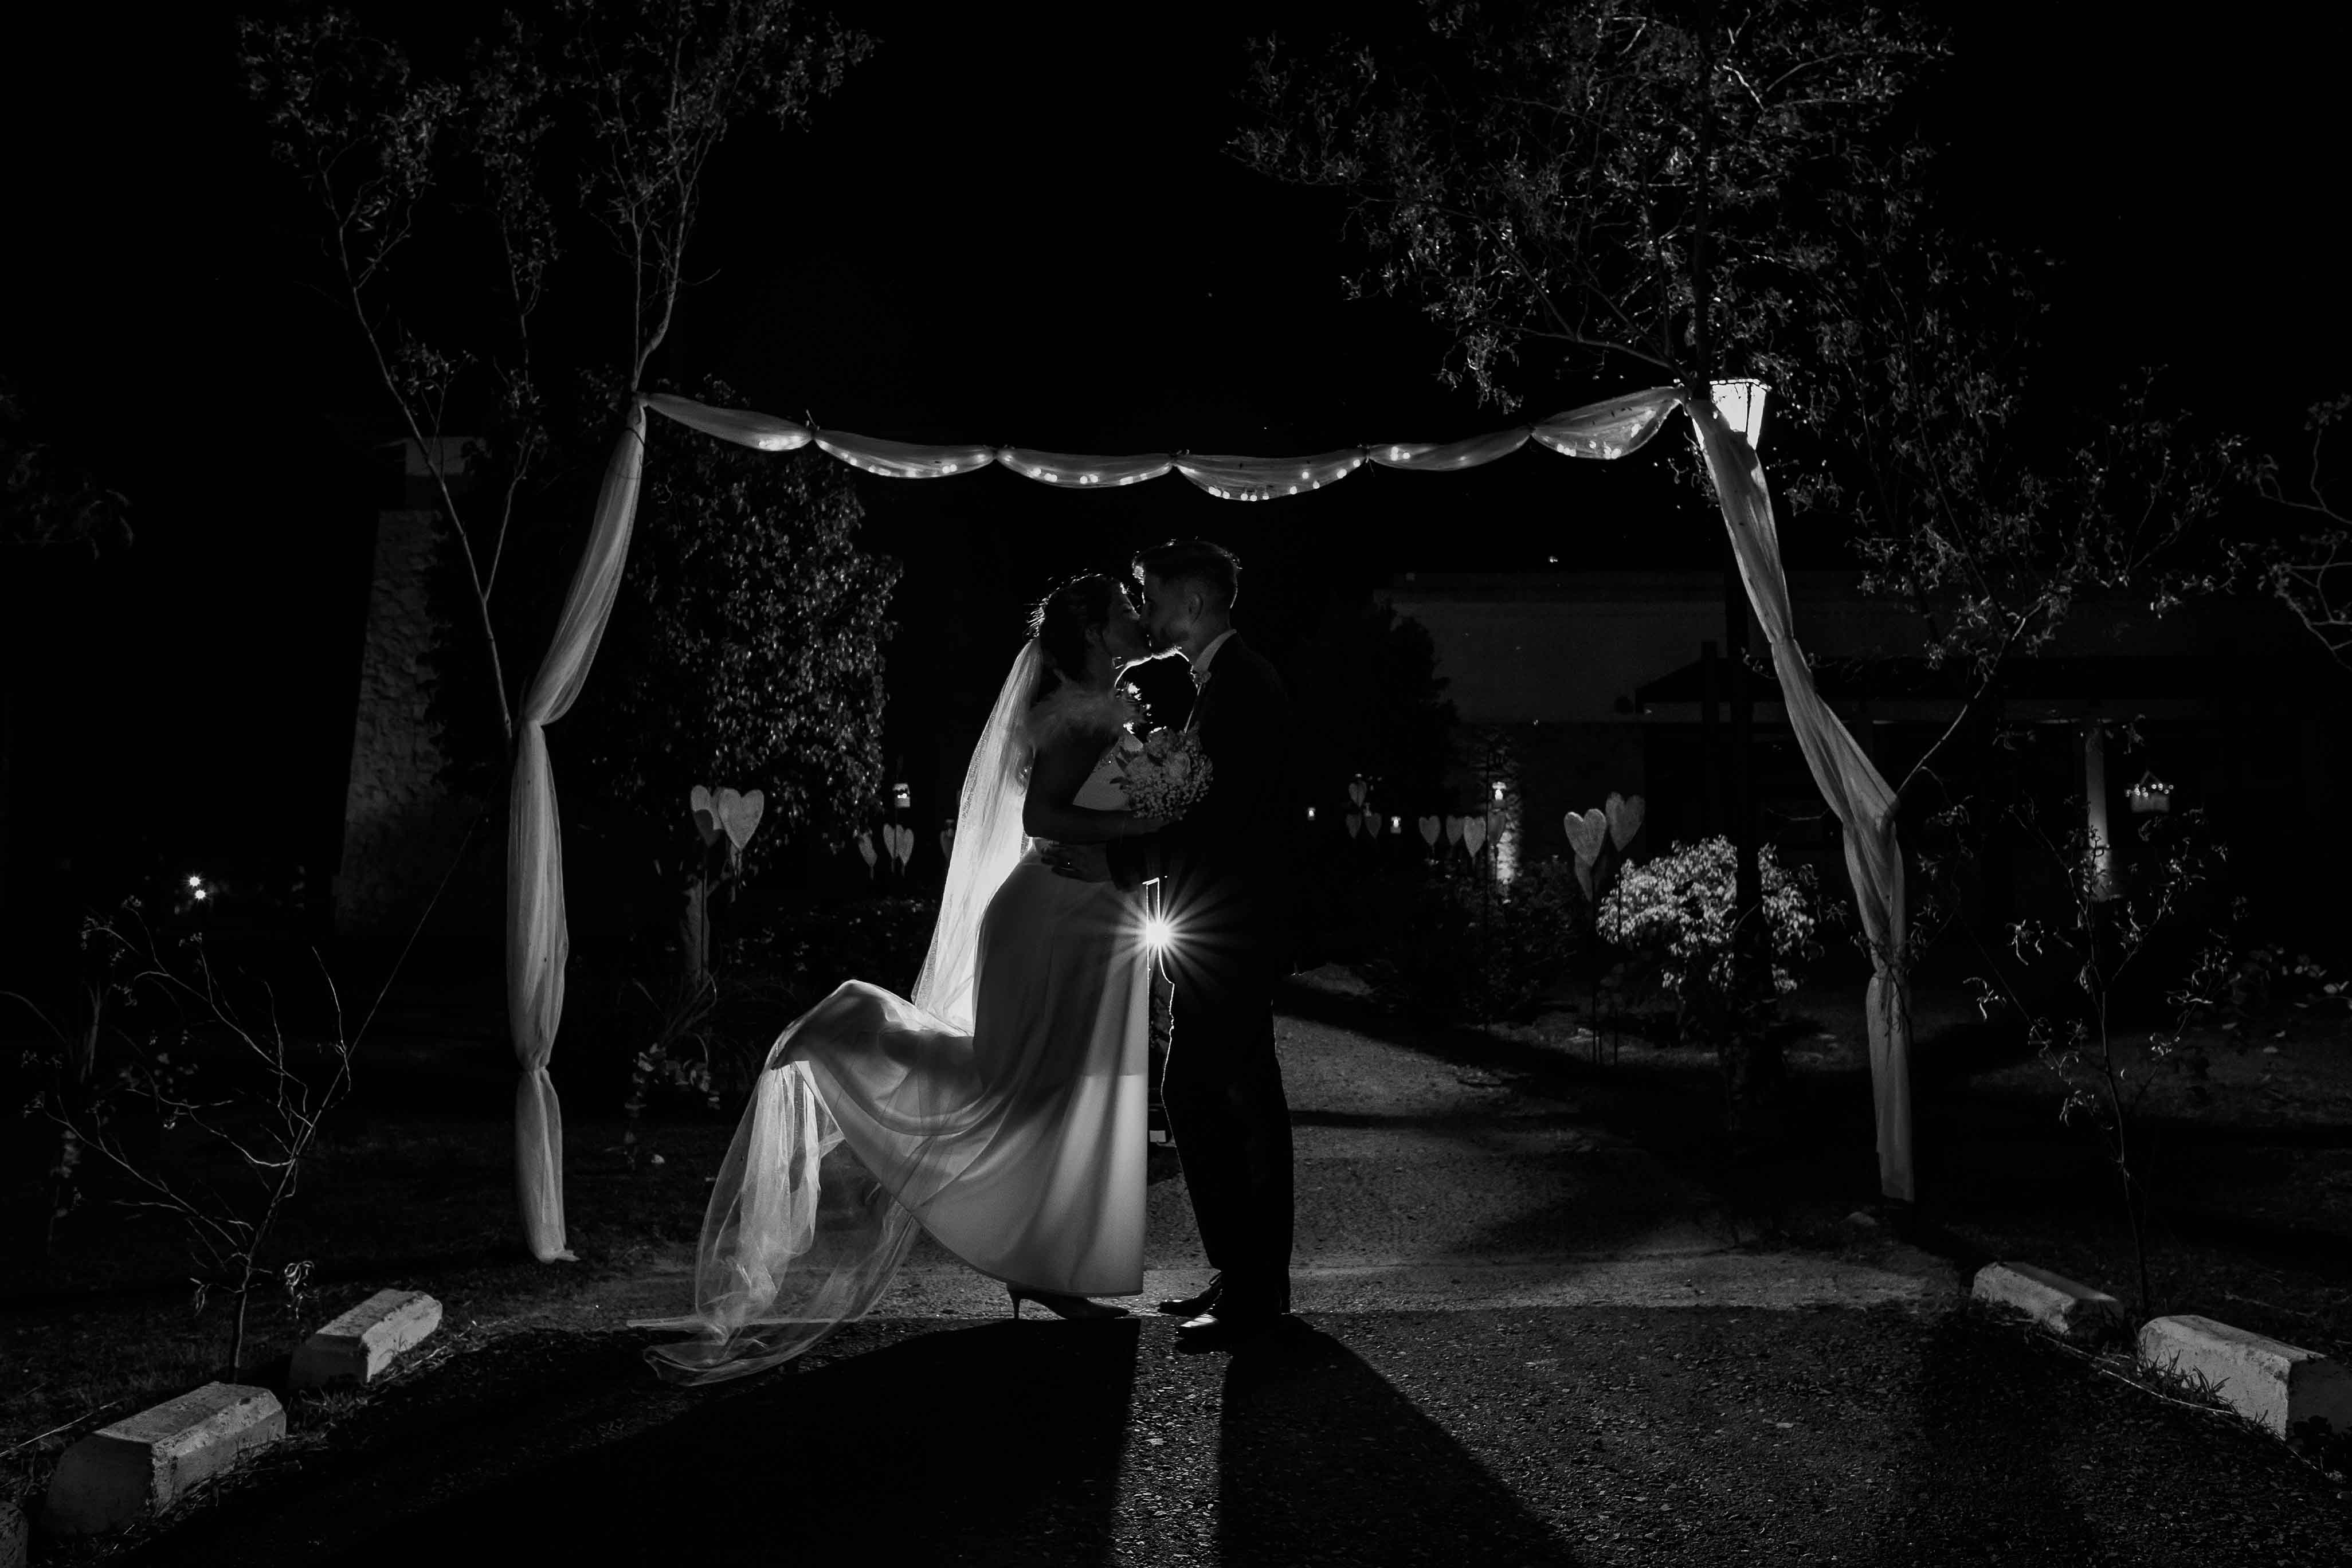 Fotos de la boda de Ani y Gonza en Victoria realizadas por Bucle Fotografías Flor Bosio y Caro Clerici